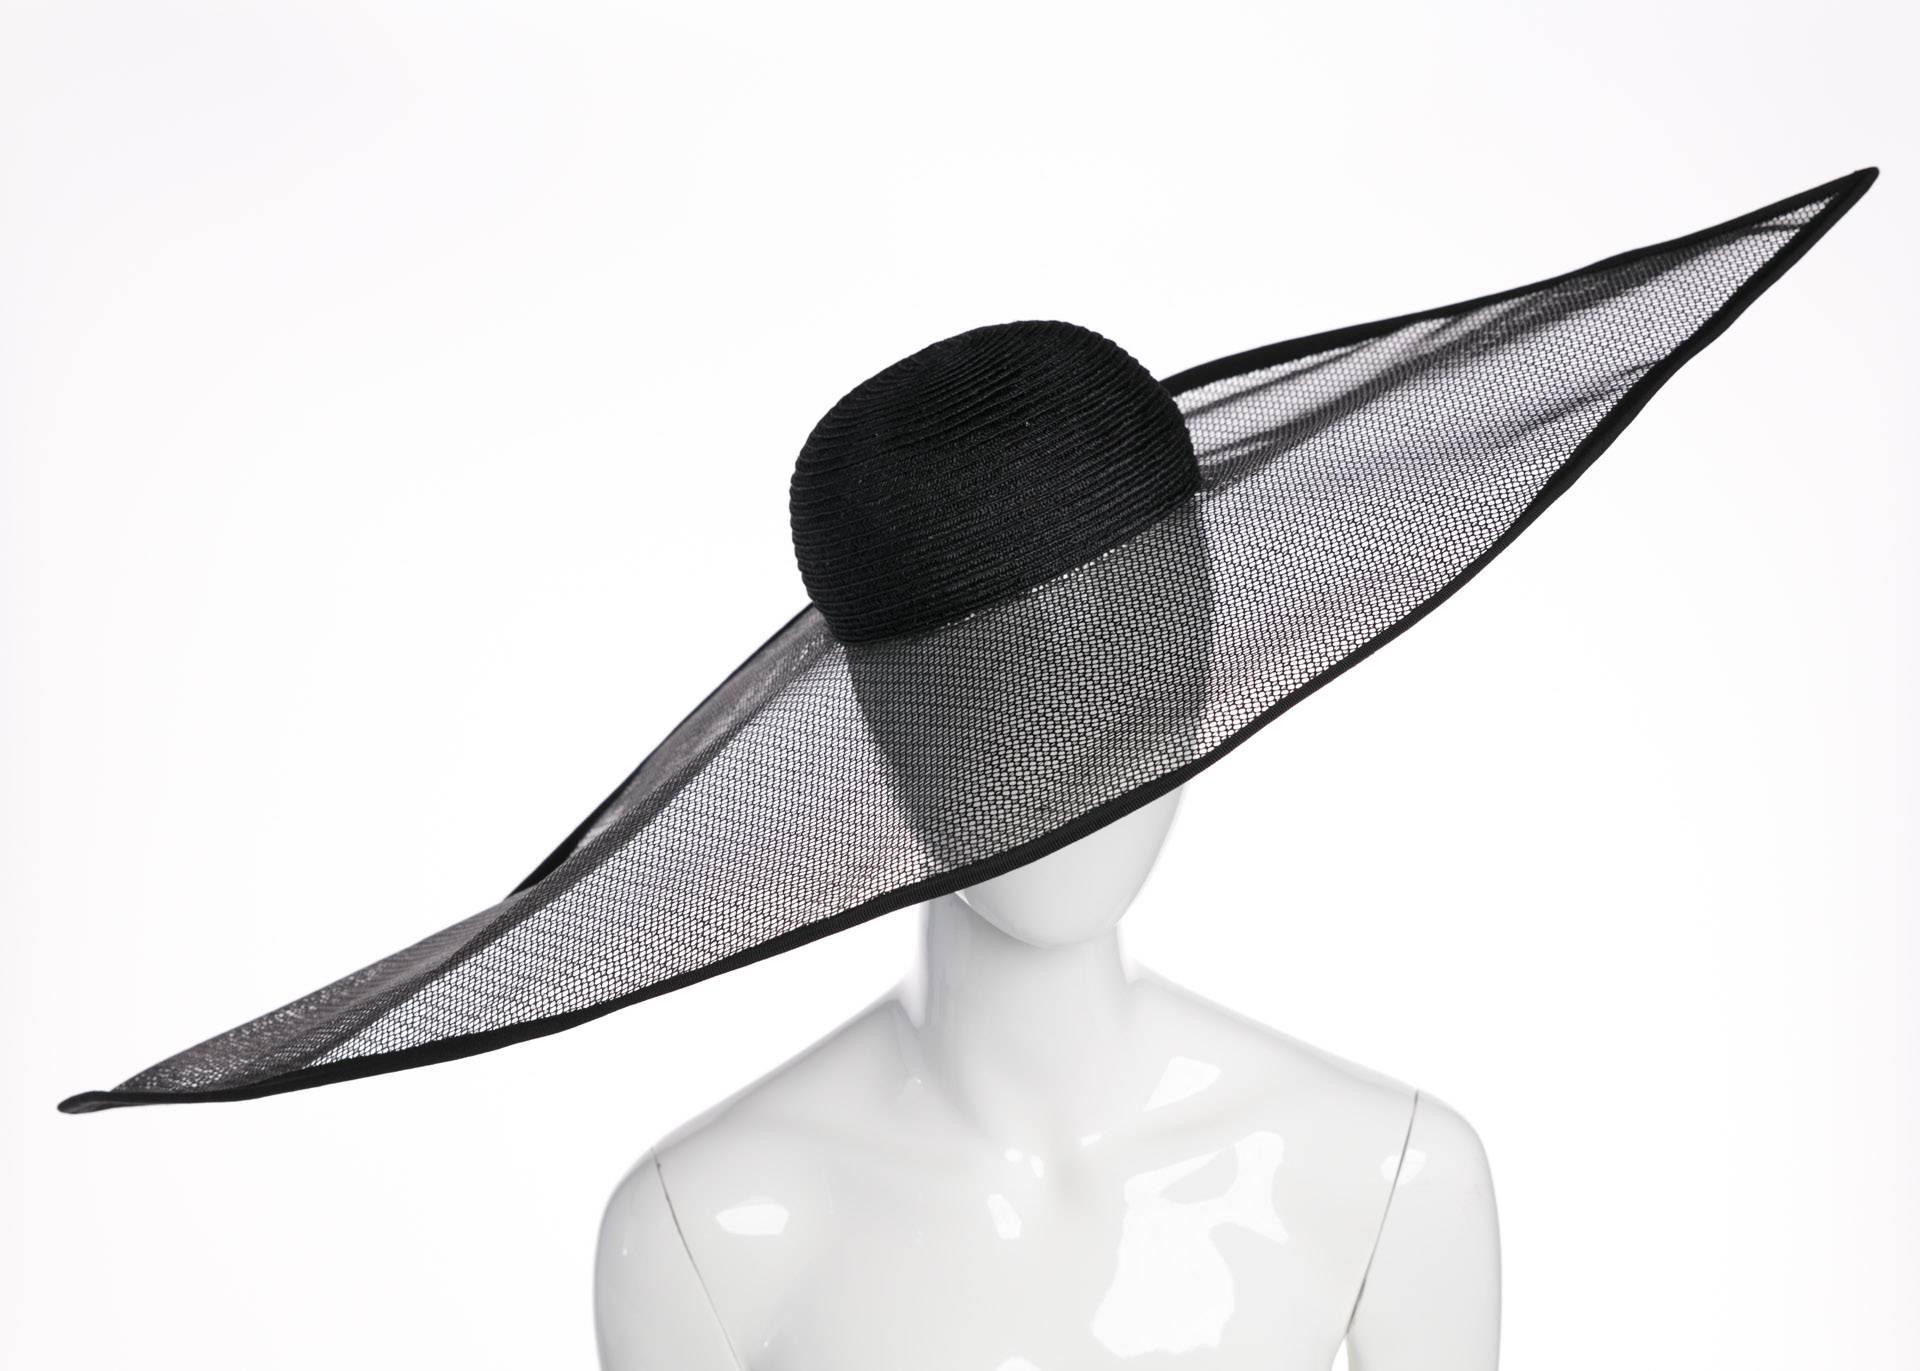 Ce chapeau ne peut manquer d'évoquer les vêtements éclatants arborés lors des événements royaux en Grande-Bretagne. Le célèbre designer italien Giorgio Armani apporte à ce chapeau la même sophistication qu'à ses vêtements. En sisal noir teinté, la